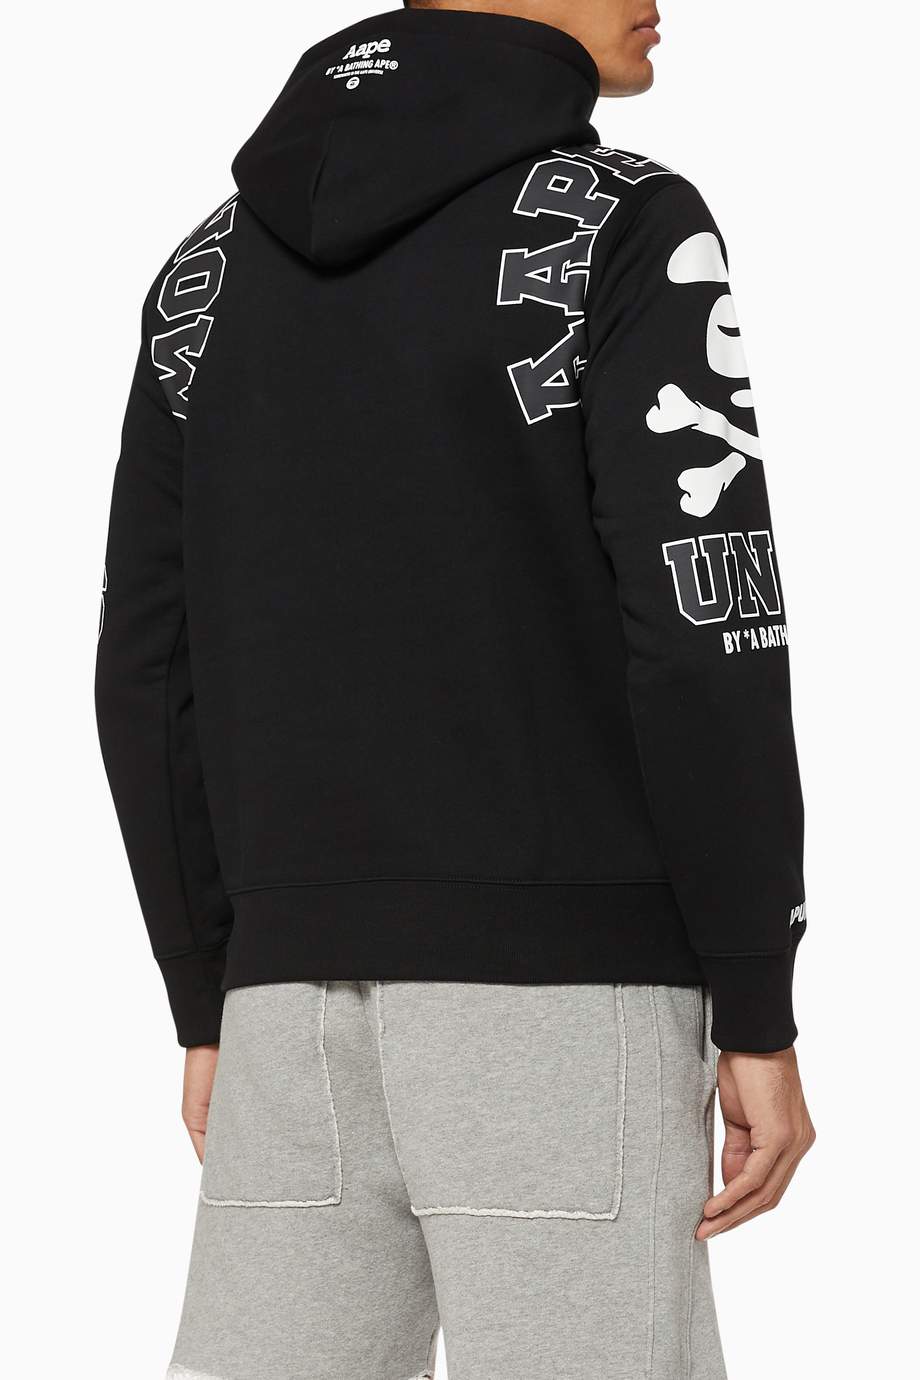 Shop AAPE Black AAPE UNVS Jersey Hooded Sweatshirt for Men | Ounass UAE